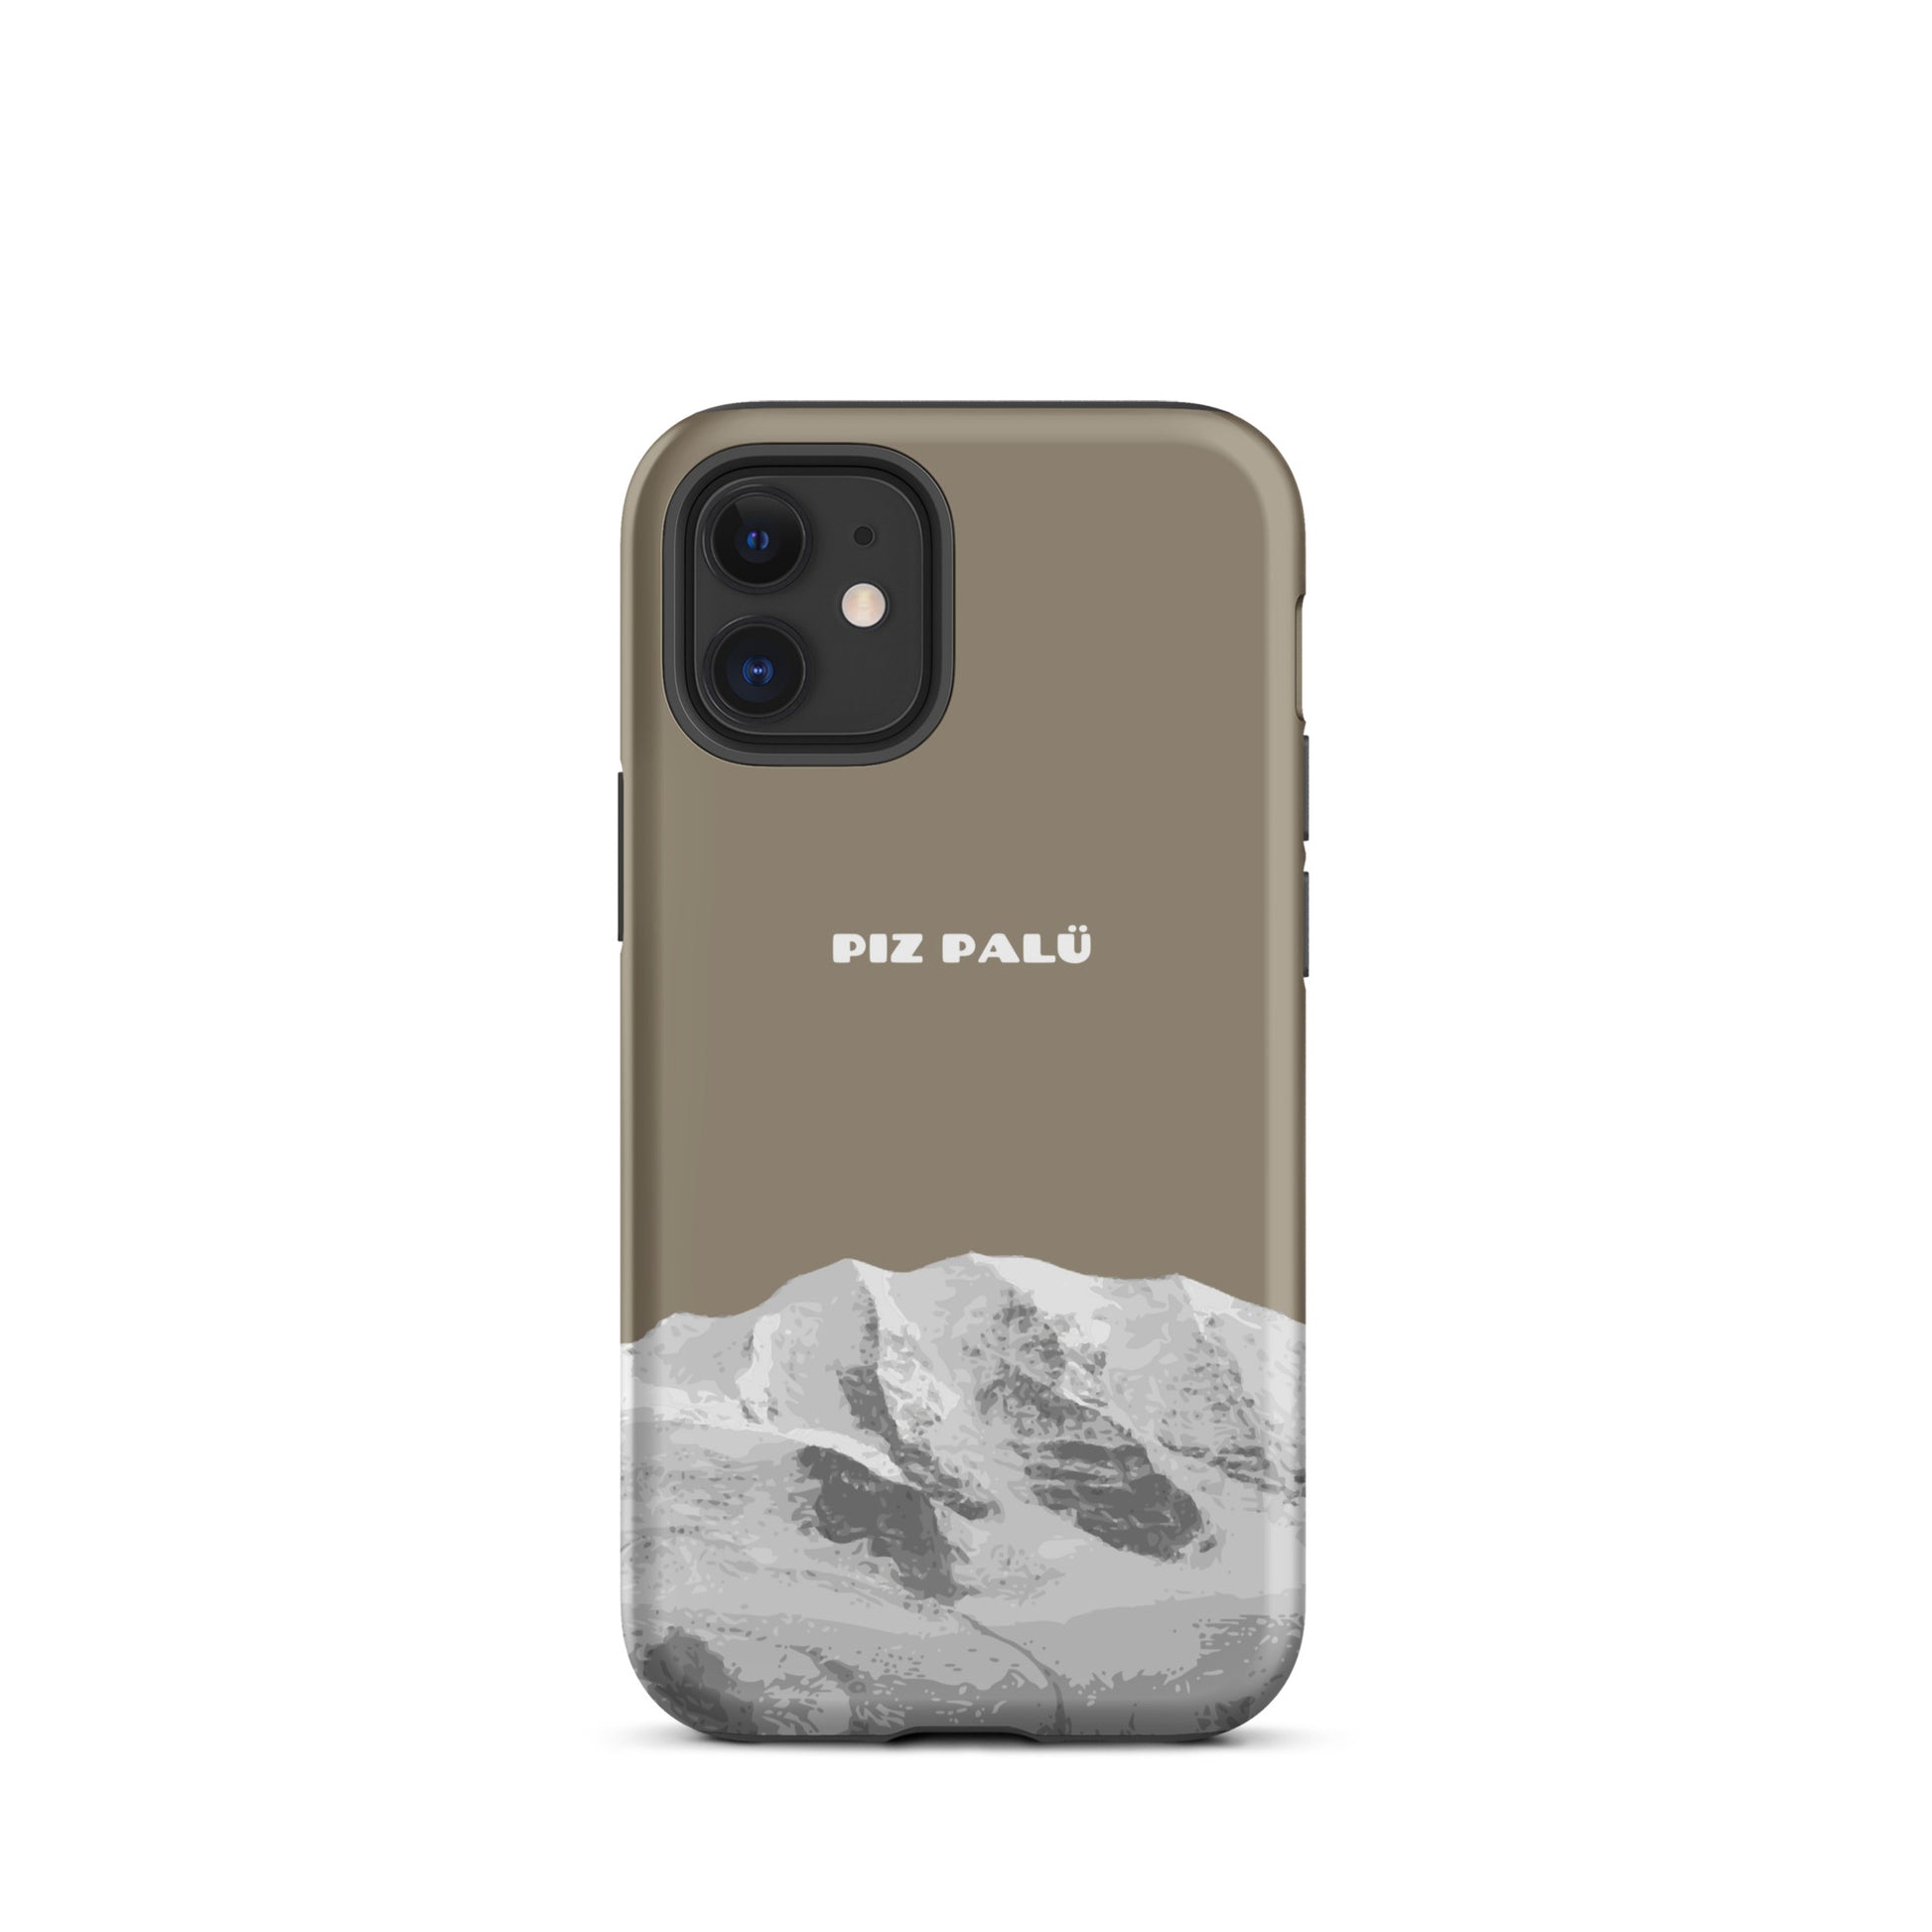 Hülle für das iPhone 12 Mini von Apple in der Farbe Graubrau, dass den Piz Palü in Graubünden zeigt.